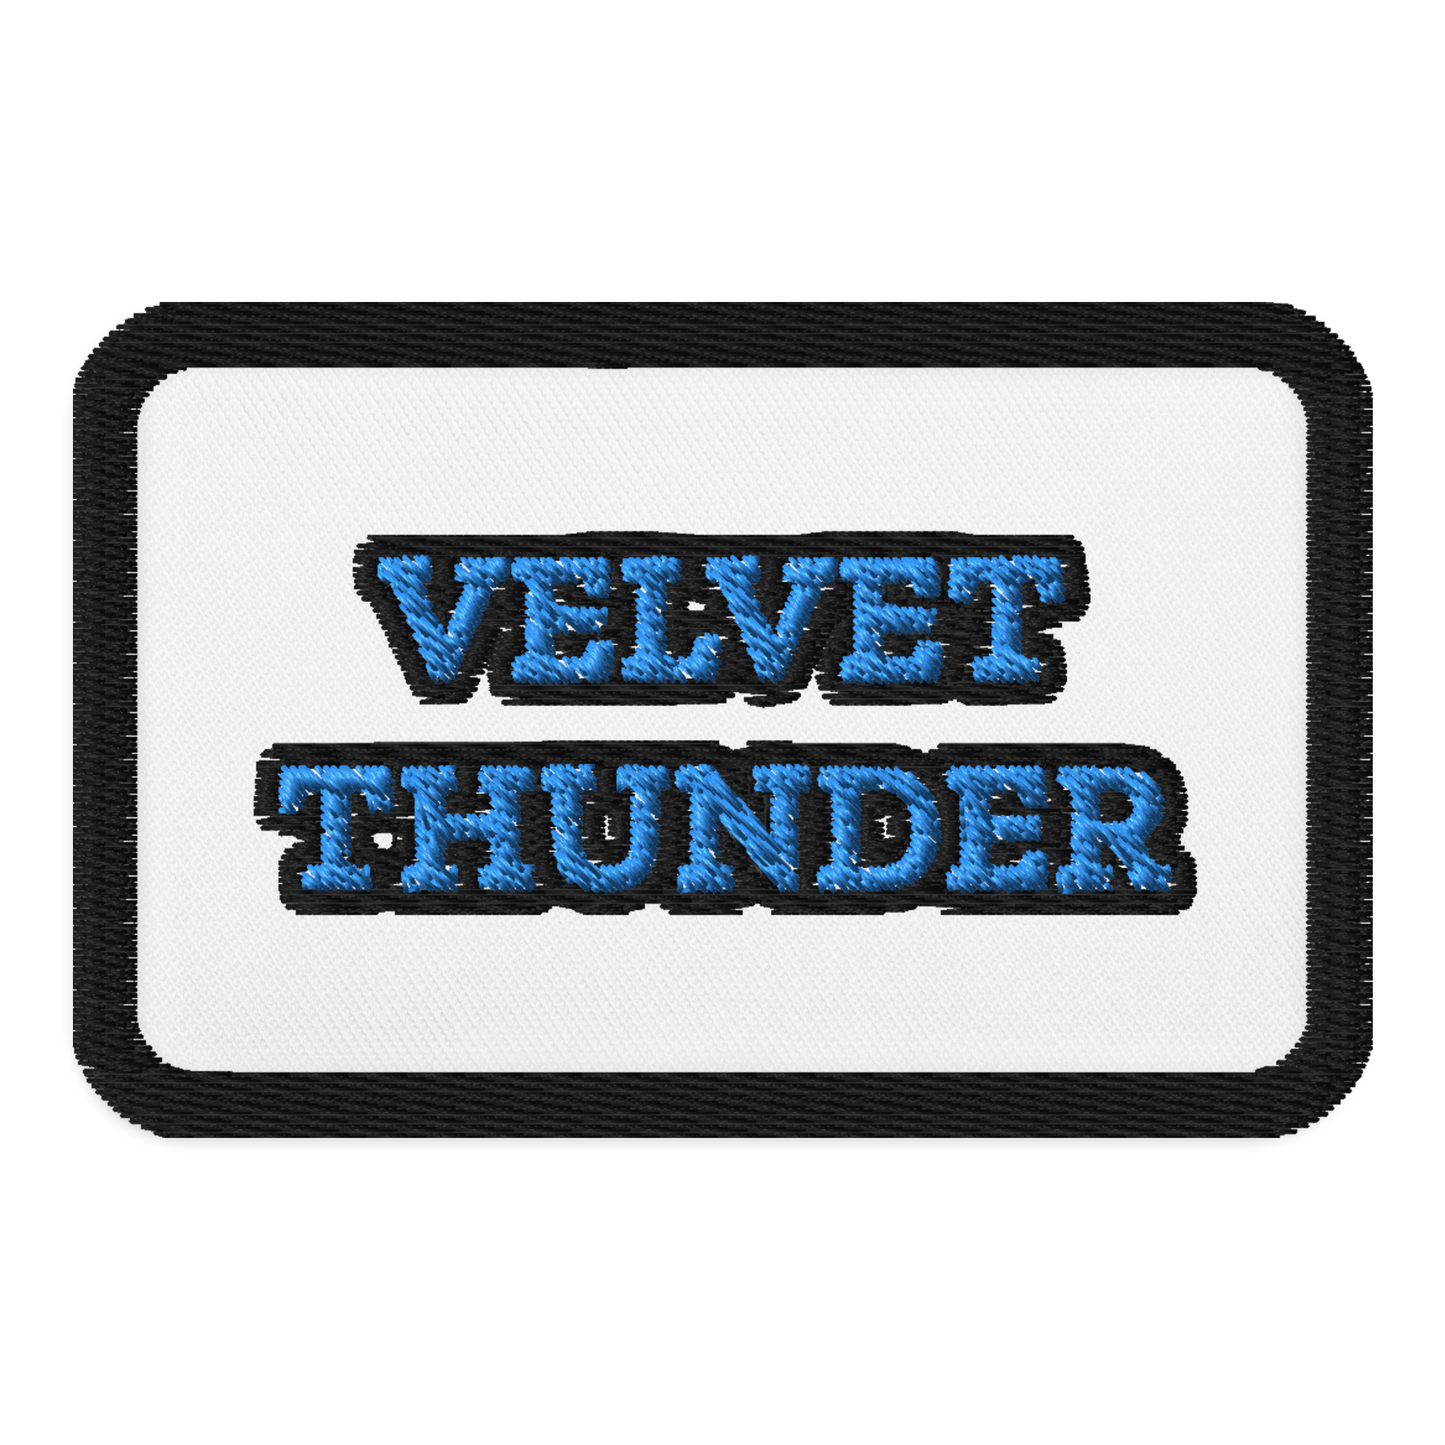 Velvet Thunder Embroidered patch